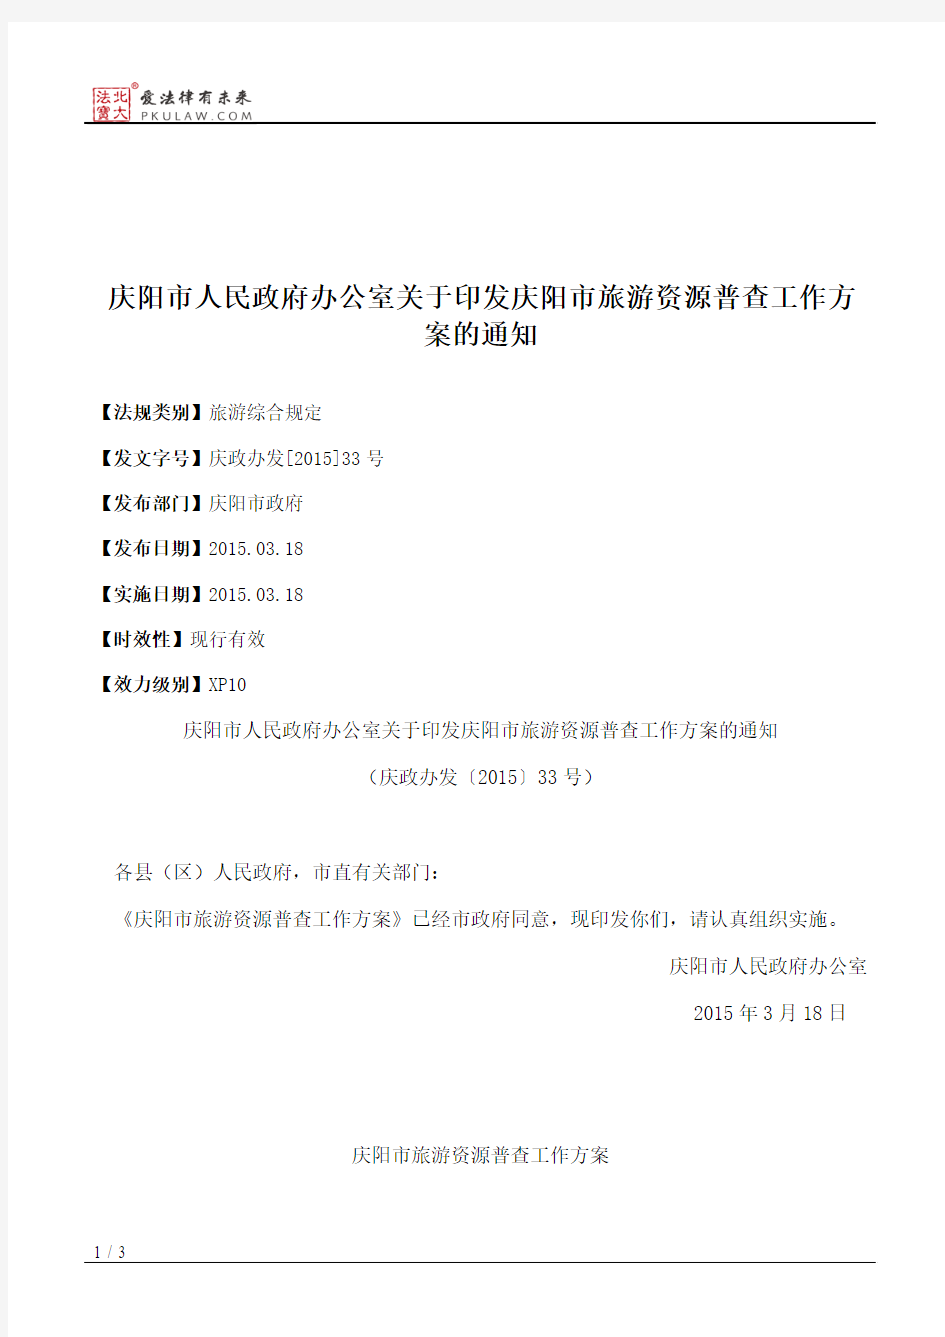 庆阳市人民政府办公室关于印发庆阳市旅游资源普查工作方案的通知